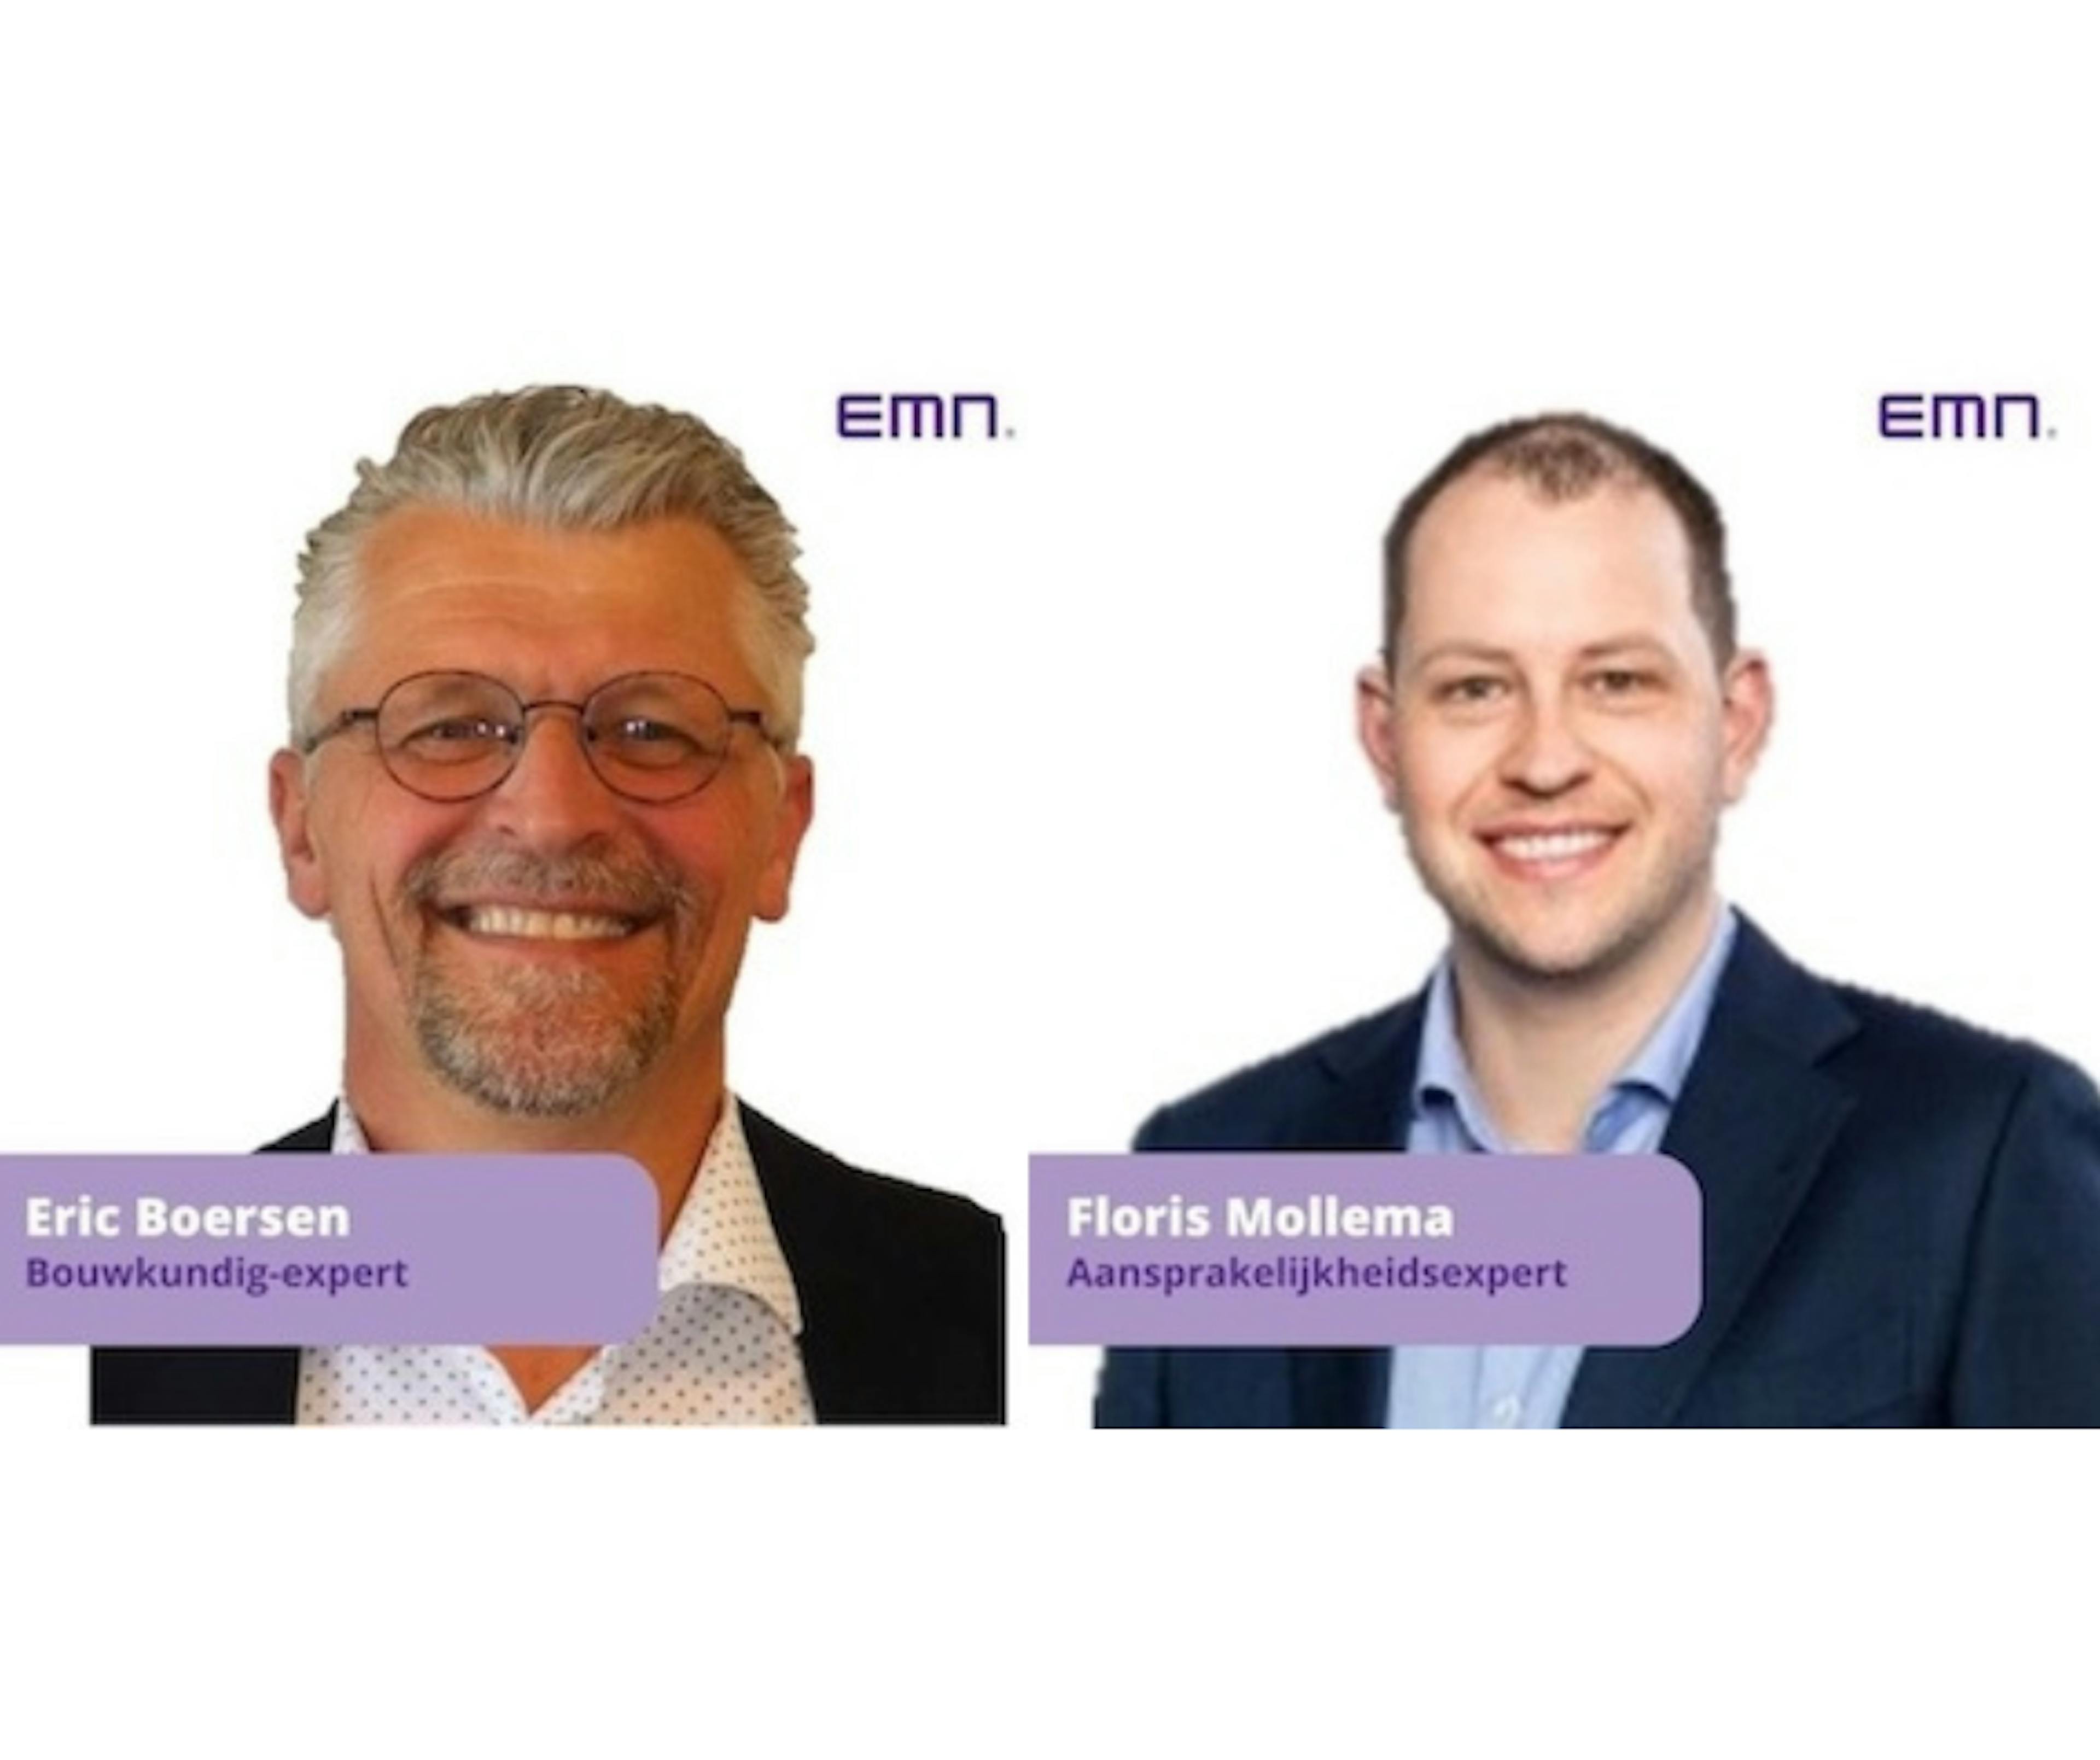 EMN breidt expertisekorps uit met Eric Boersen en Floris Mollema